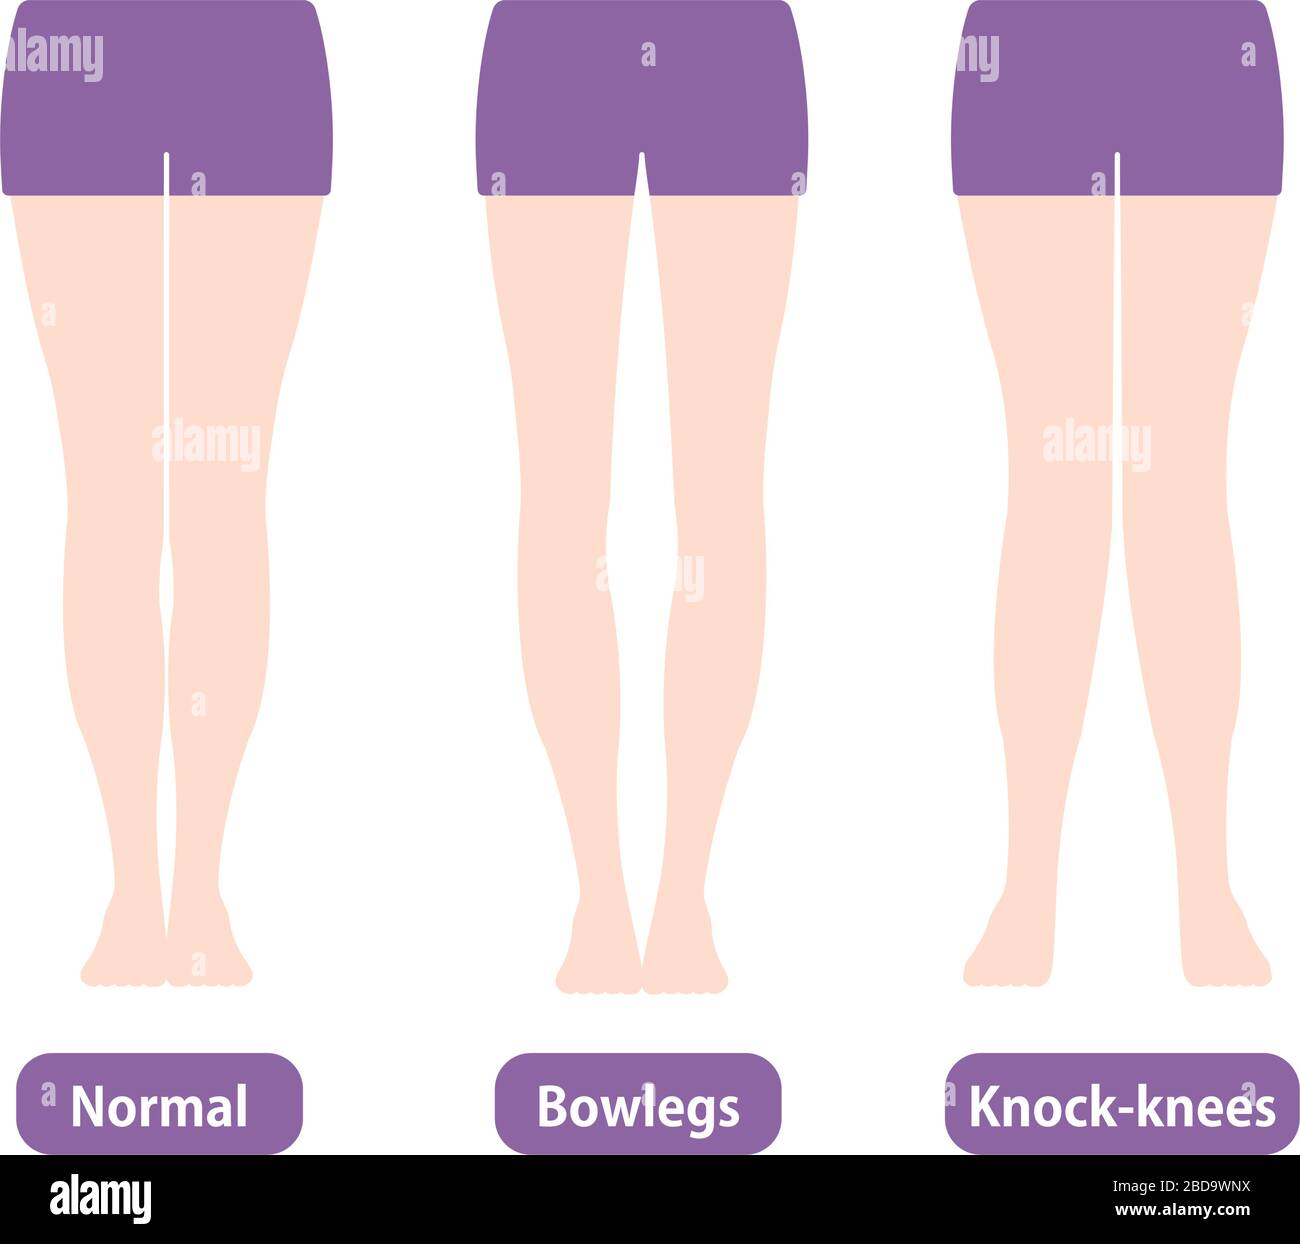 Normal, Bowlegs, Knock-knees 